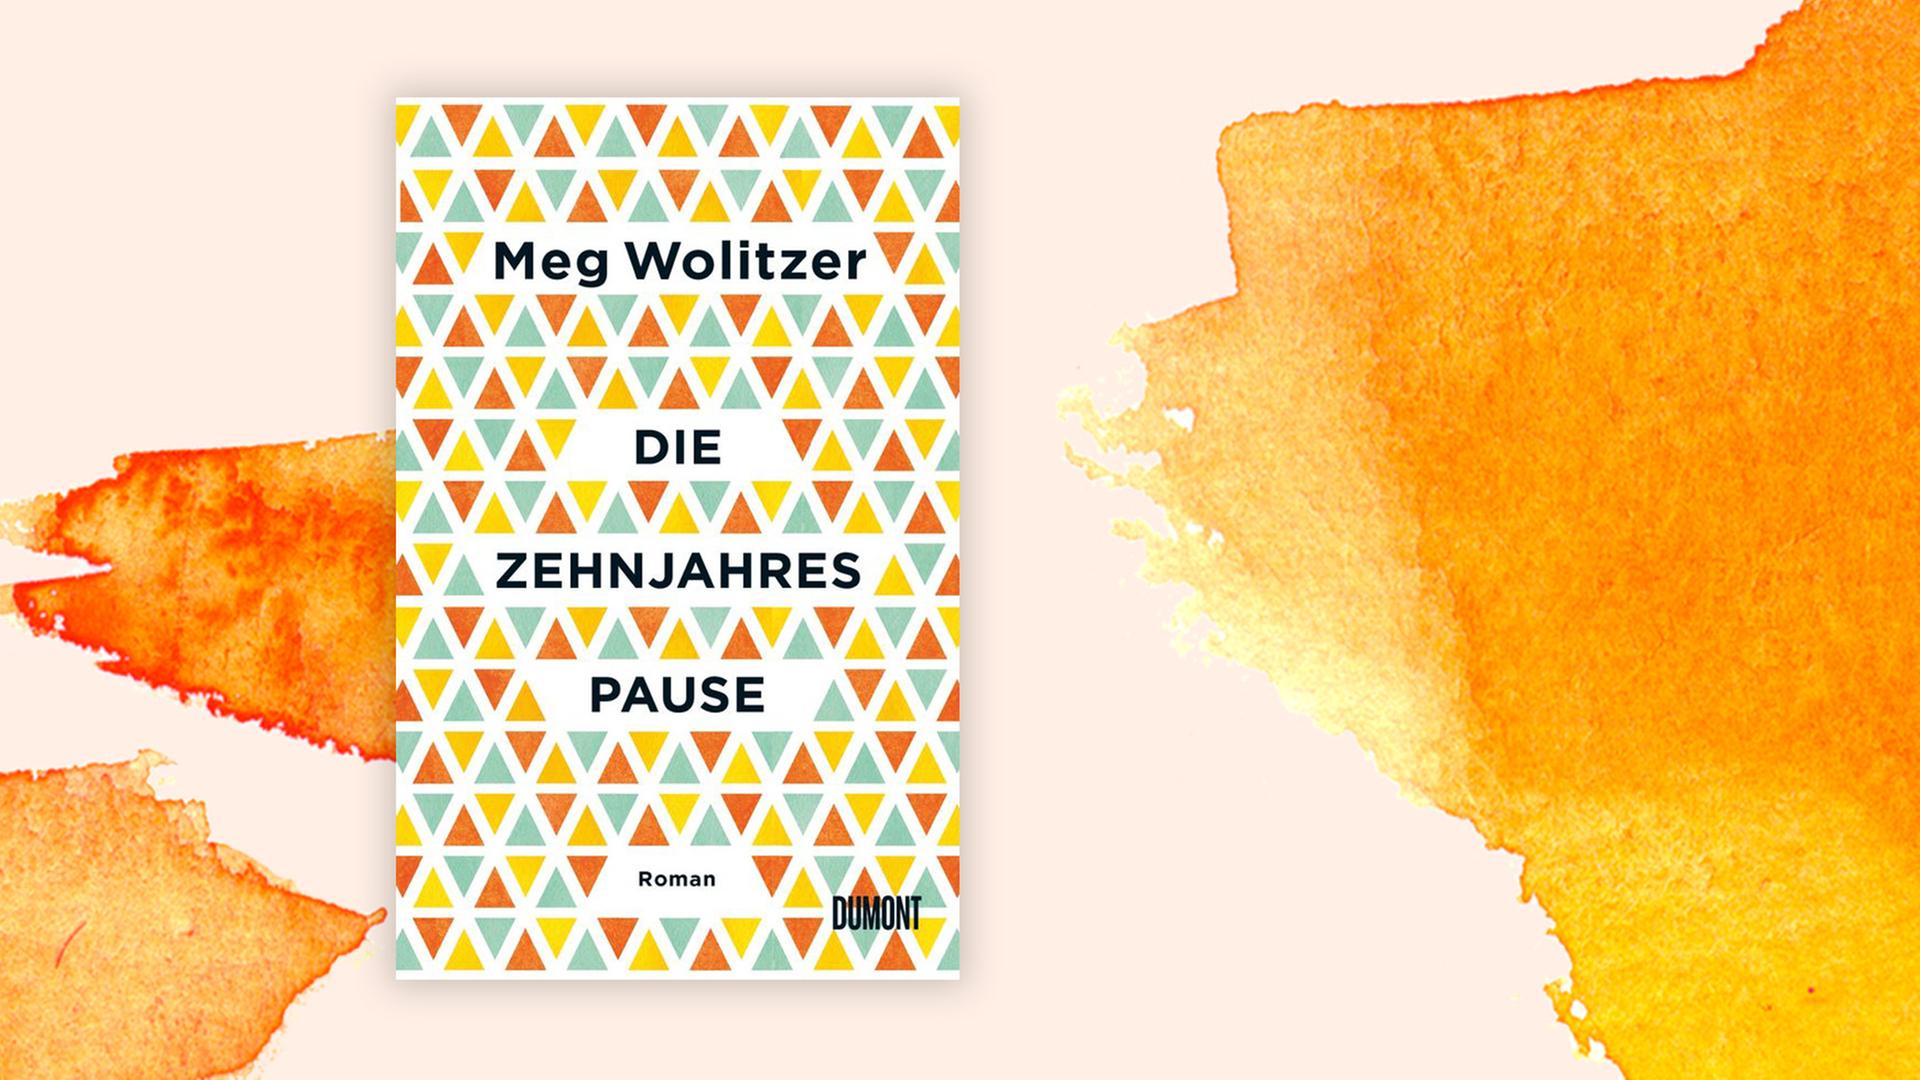 Buchcover von Meg Wolitzers "Die Zehnjahrespause"